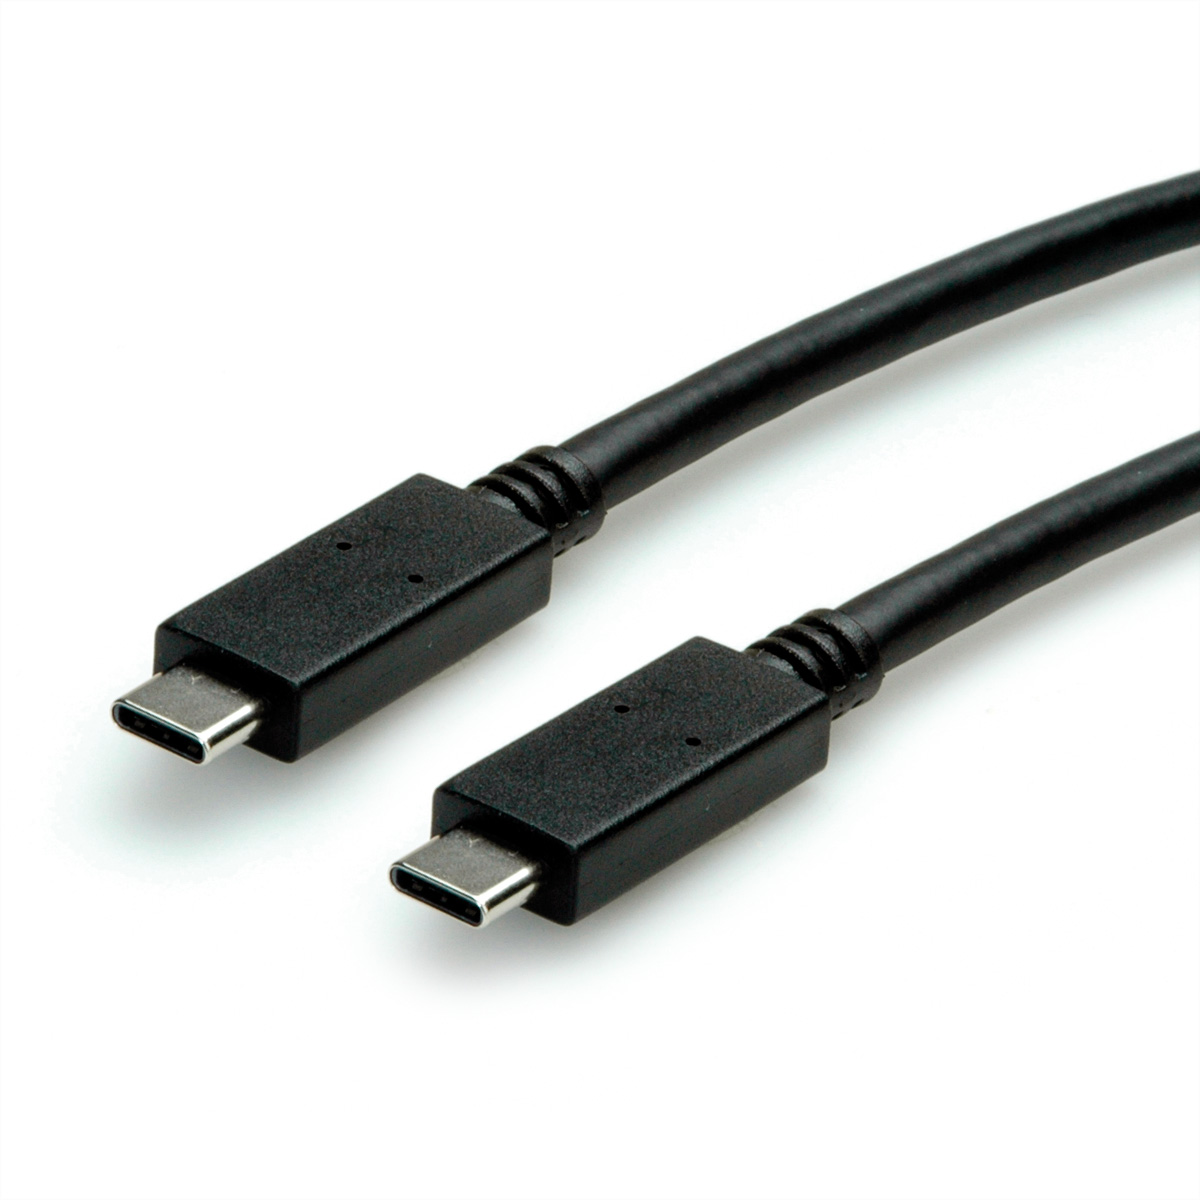 ROLINE GREEN USB Gen C-C, ST/ST USB 2 3.2 Kabel Kabel, 3.2